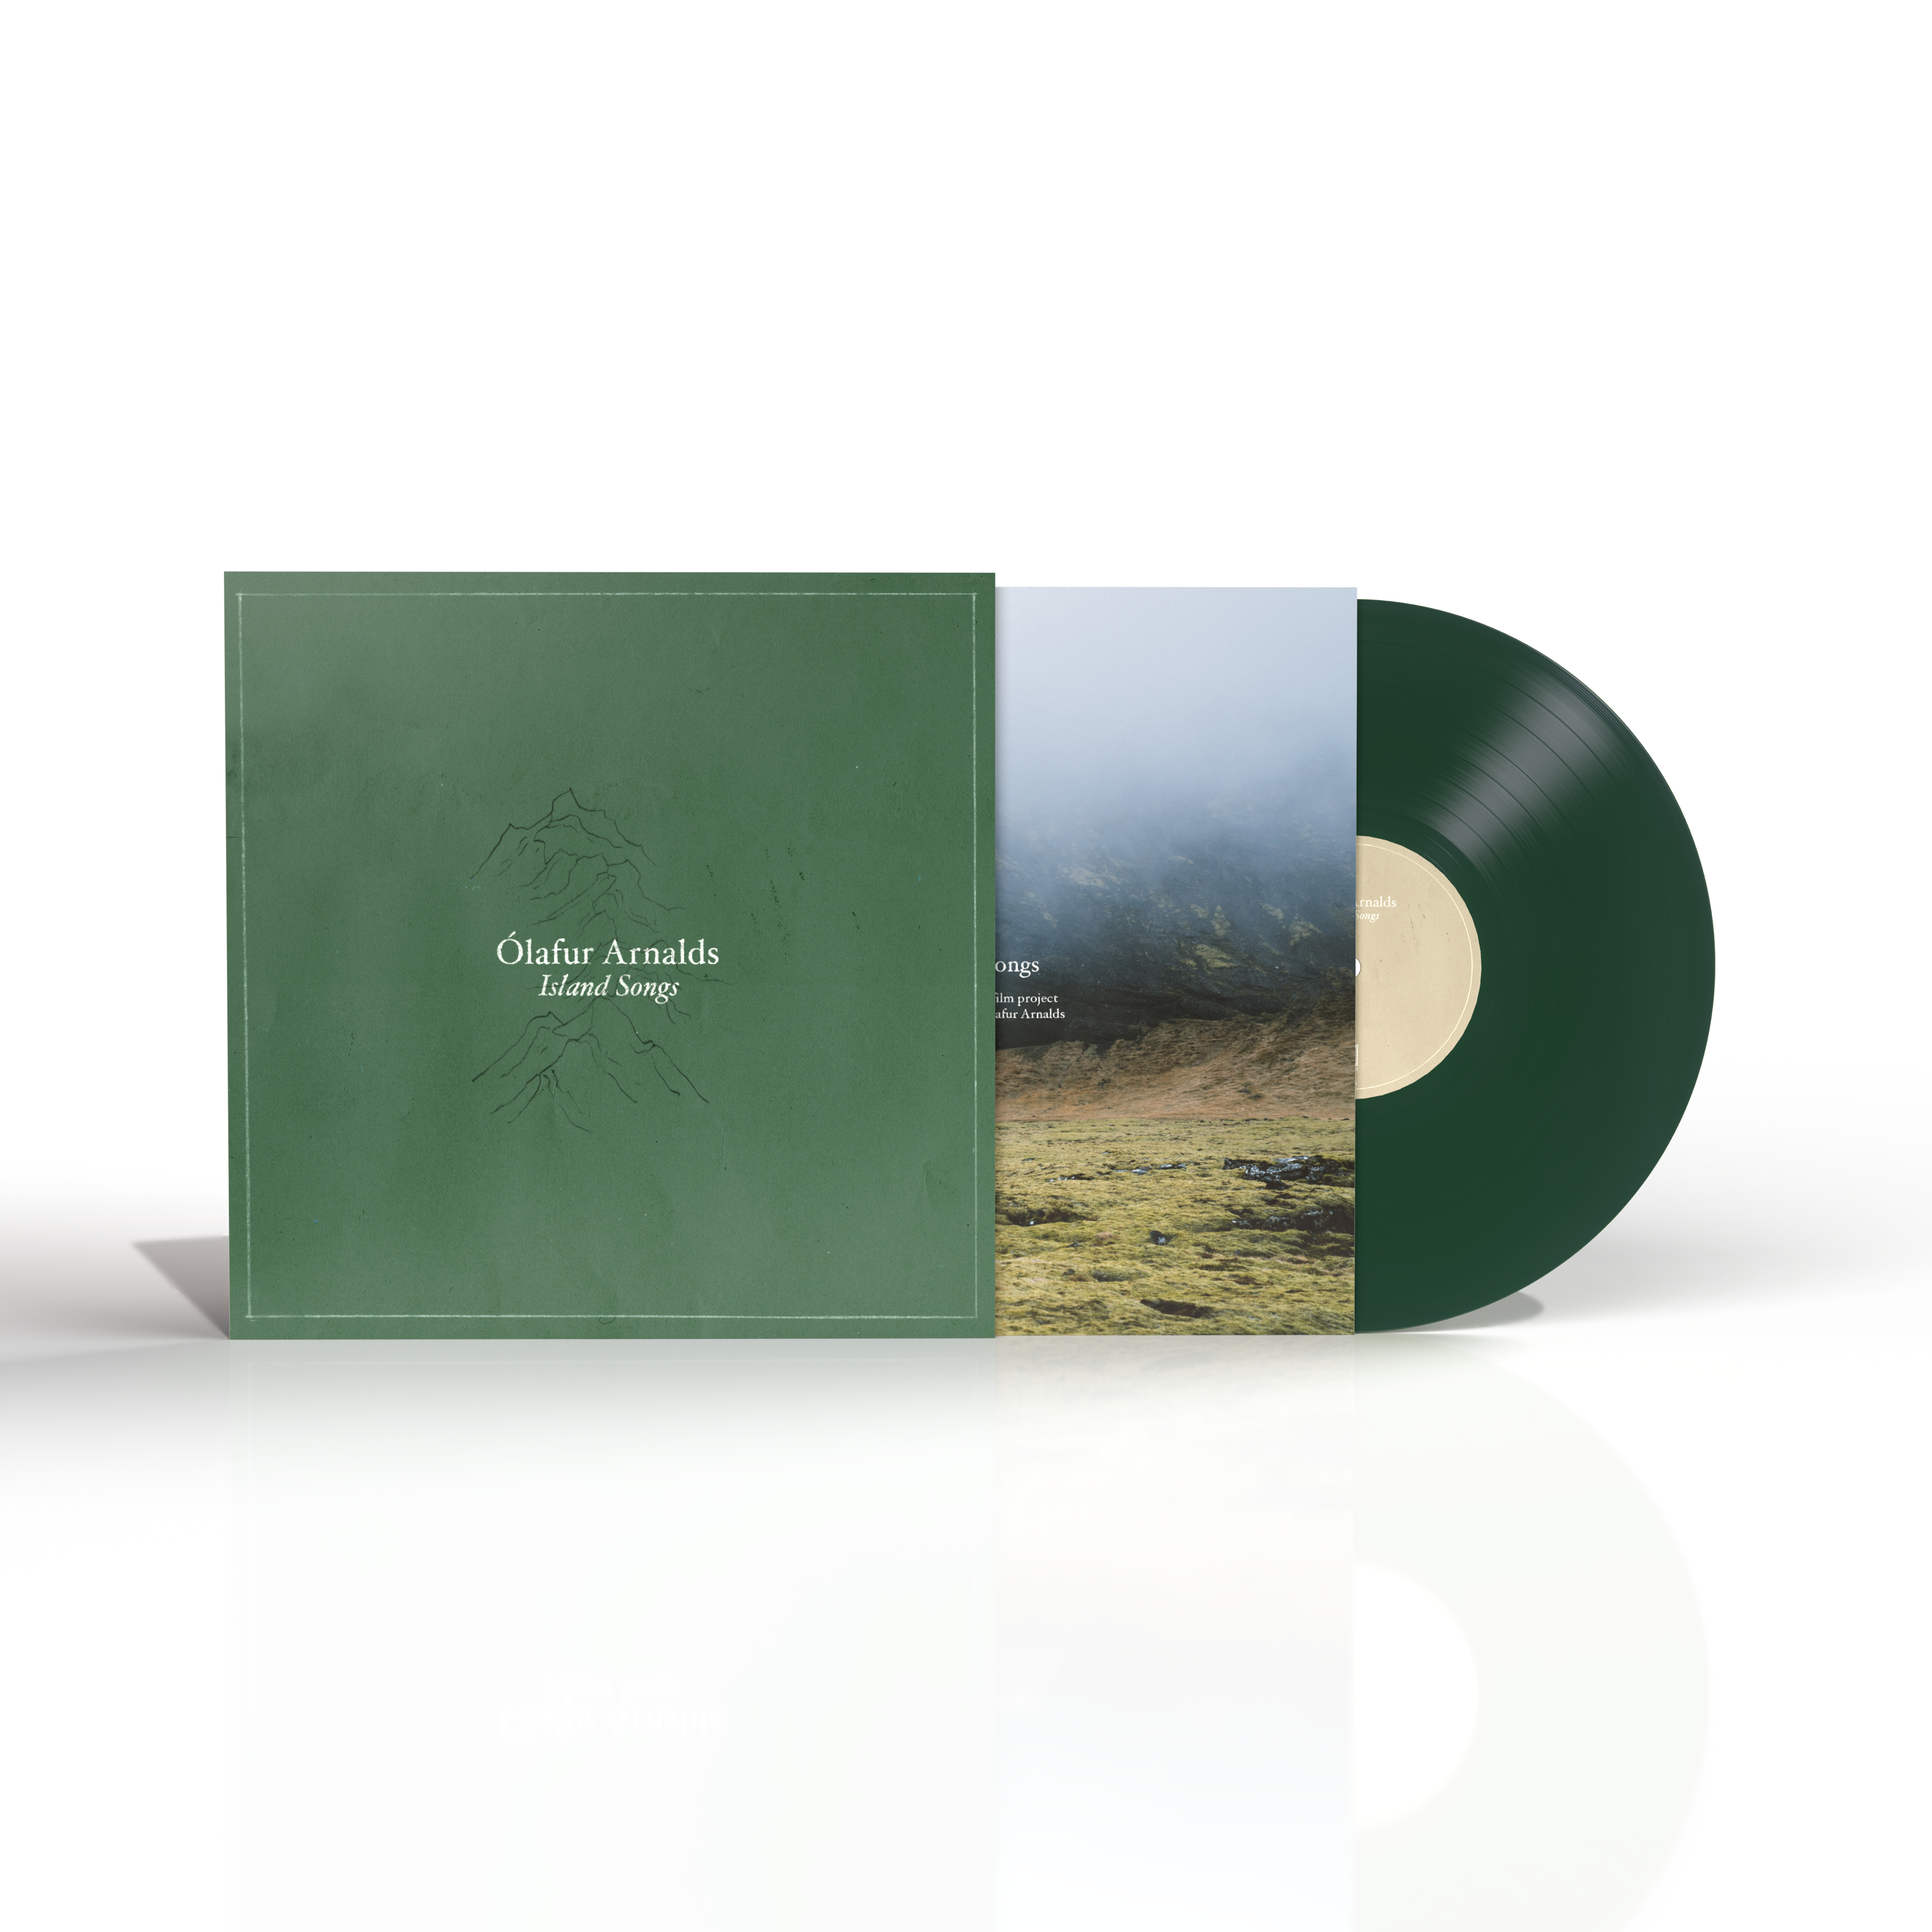 Olafur Arnalds - Island Songs [Reissue]: Green Vinyl LP